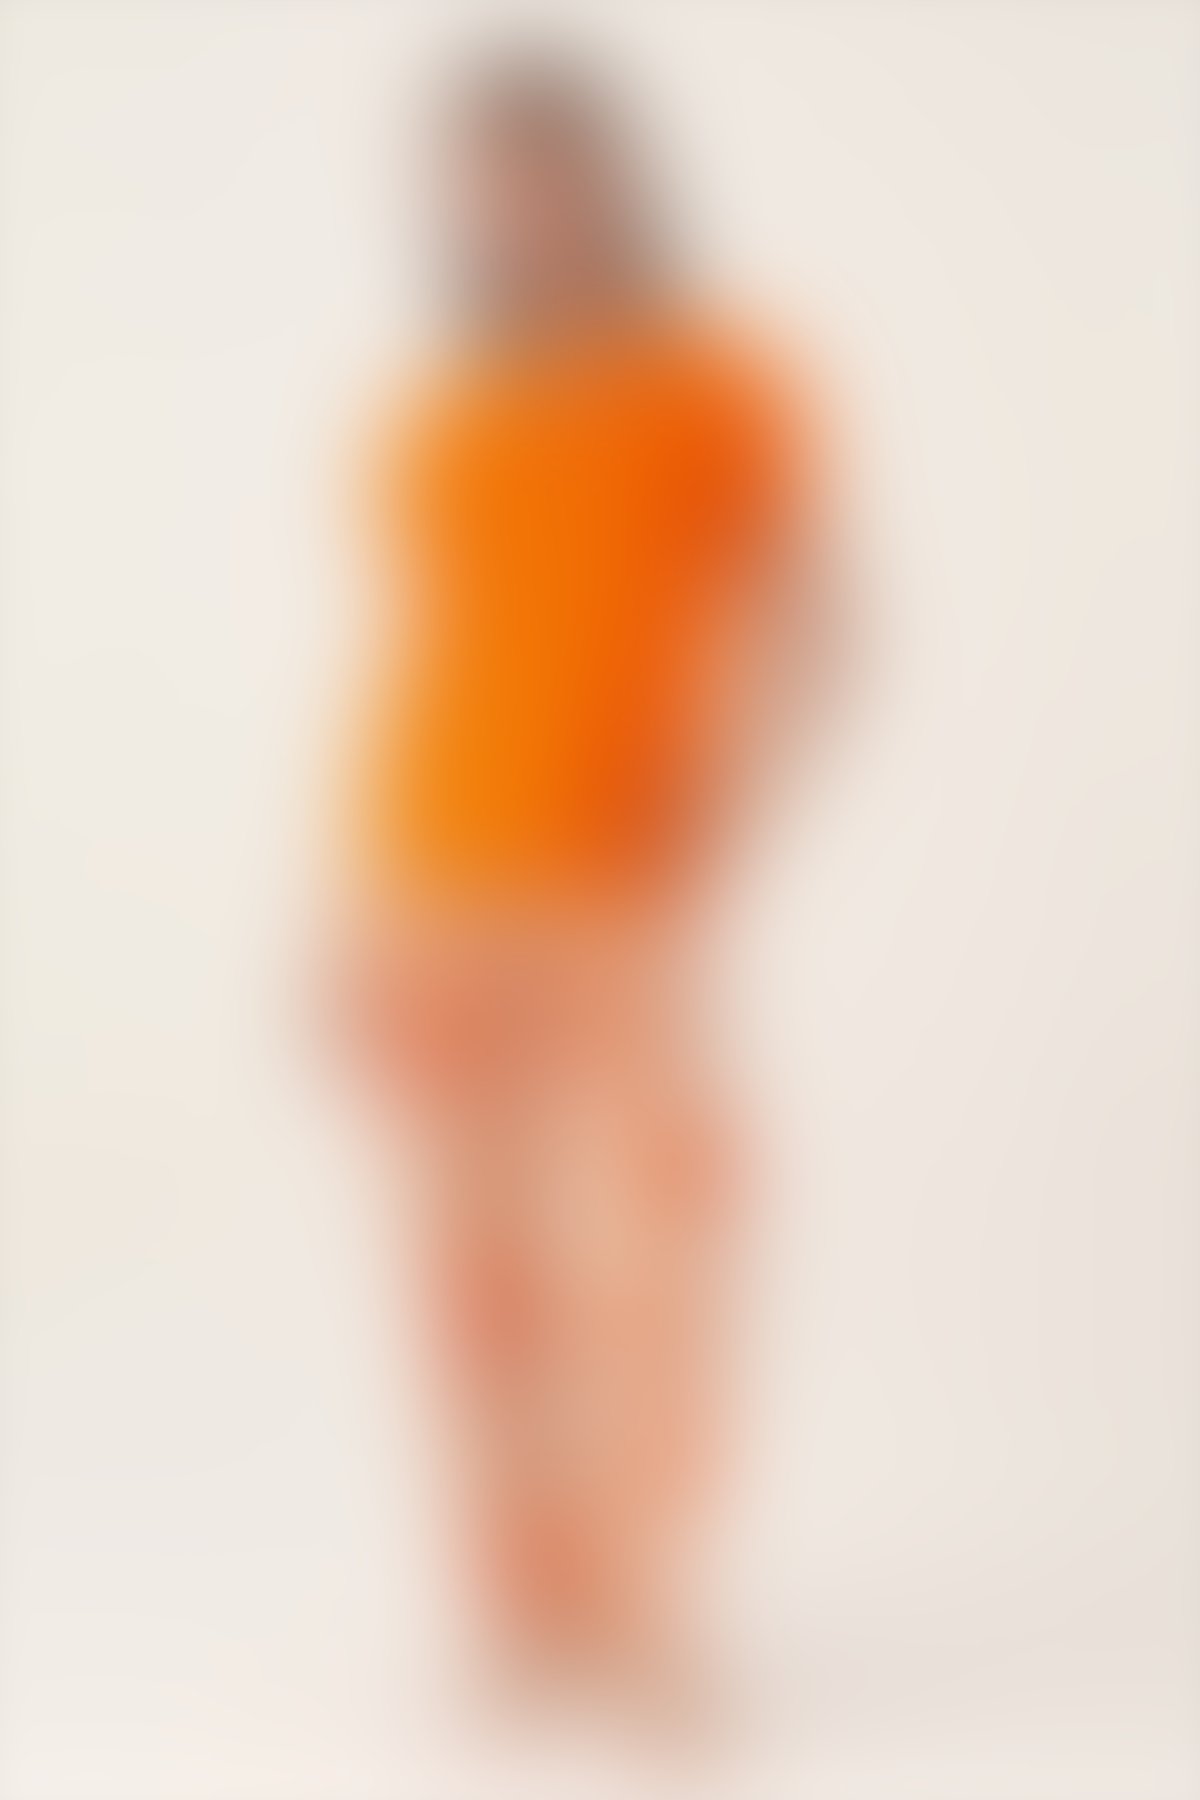 Pierre Cardin - Pierre Cardin Orange Turuncu Kadın Kısa Kol Pijama Takımı